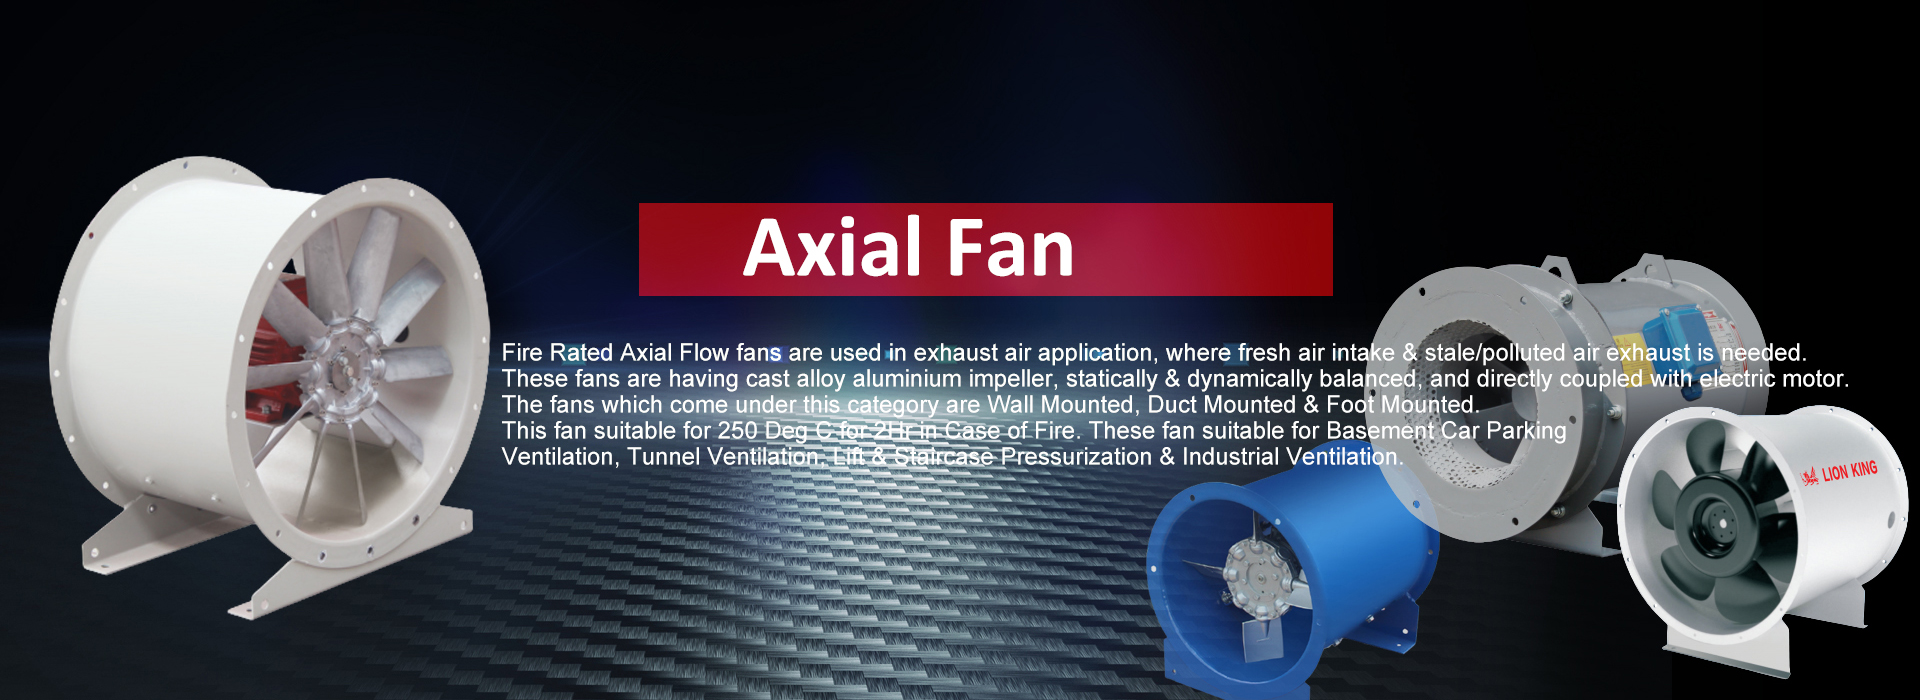 axial-fan